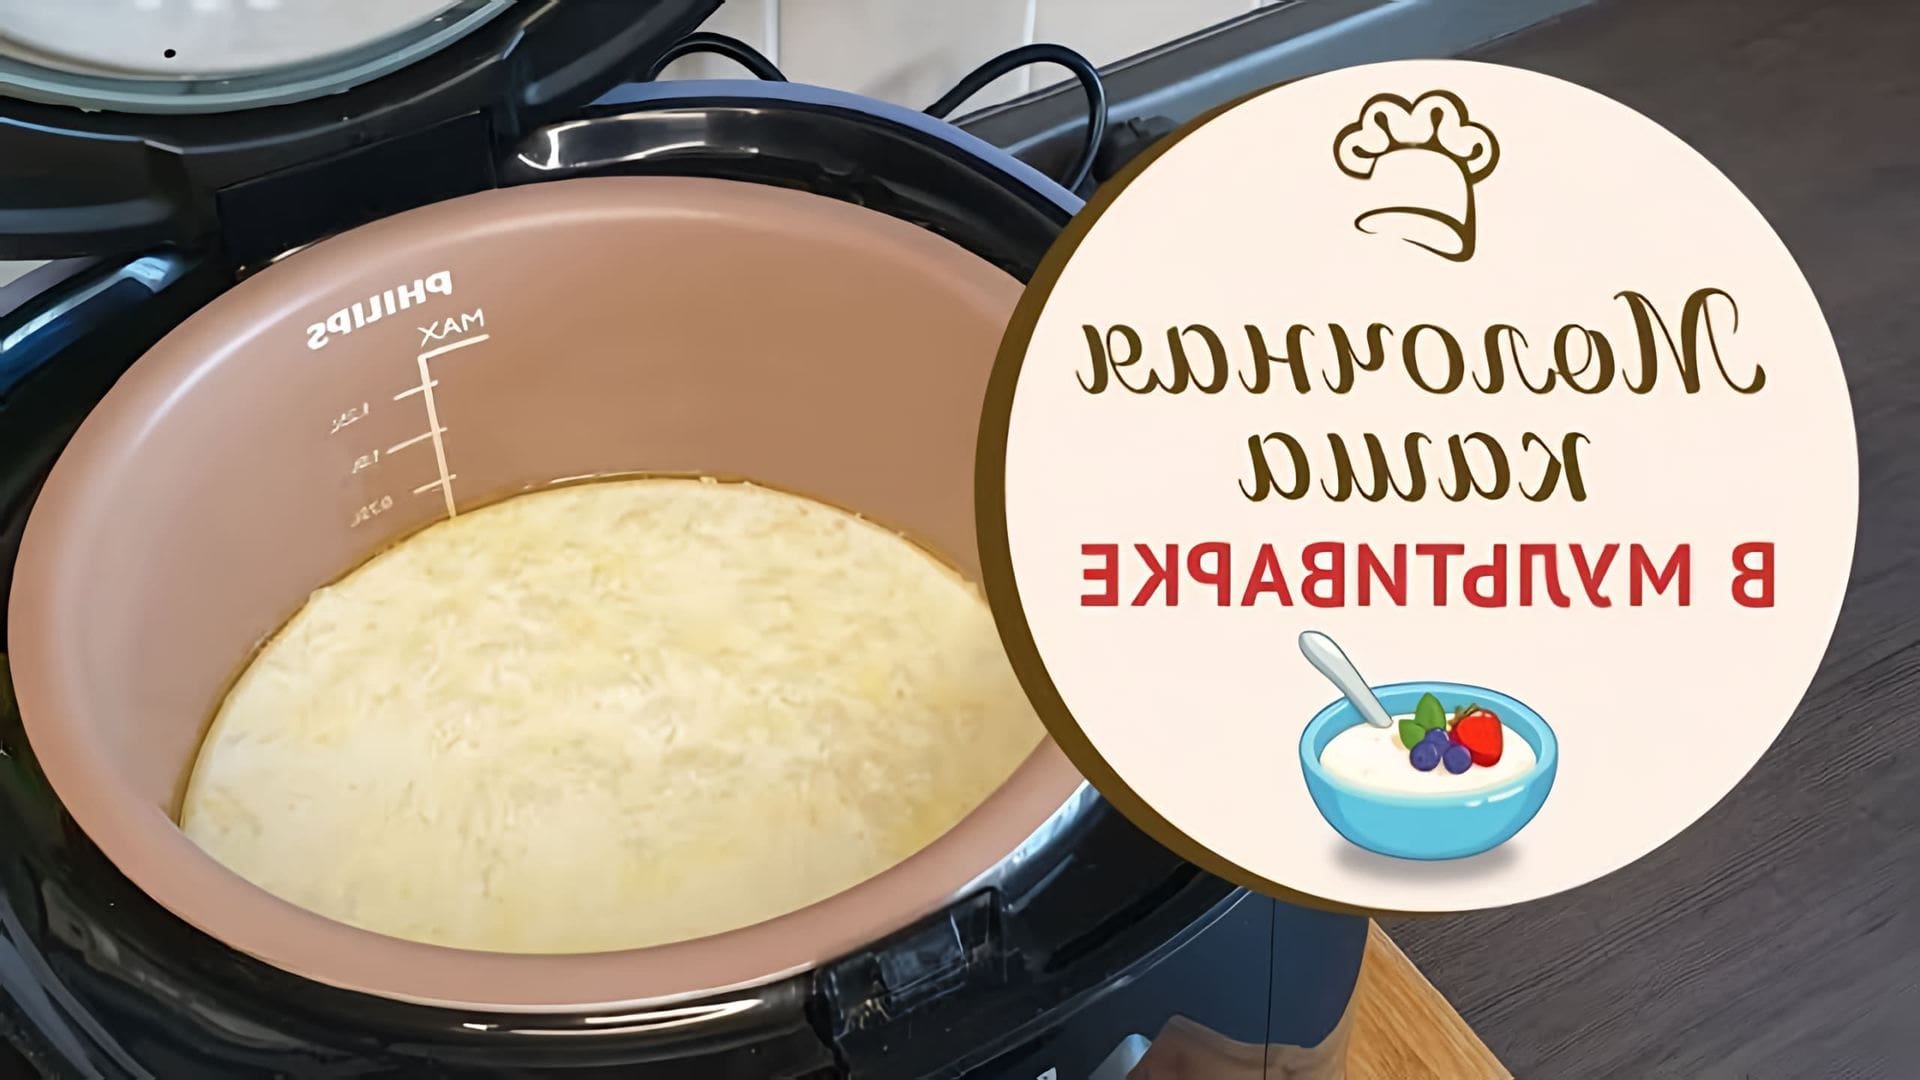 В данном видео демонстрируется процесс приготовления молочной рисовой каши в мультиварке